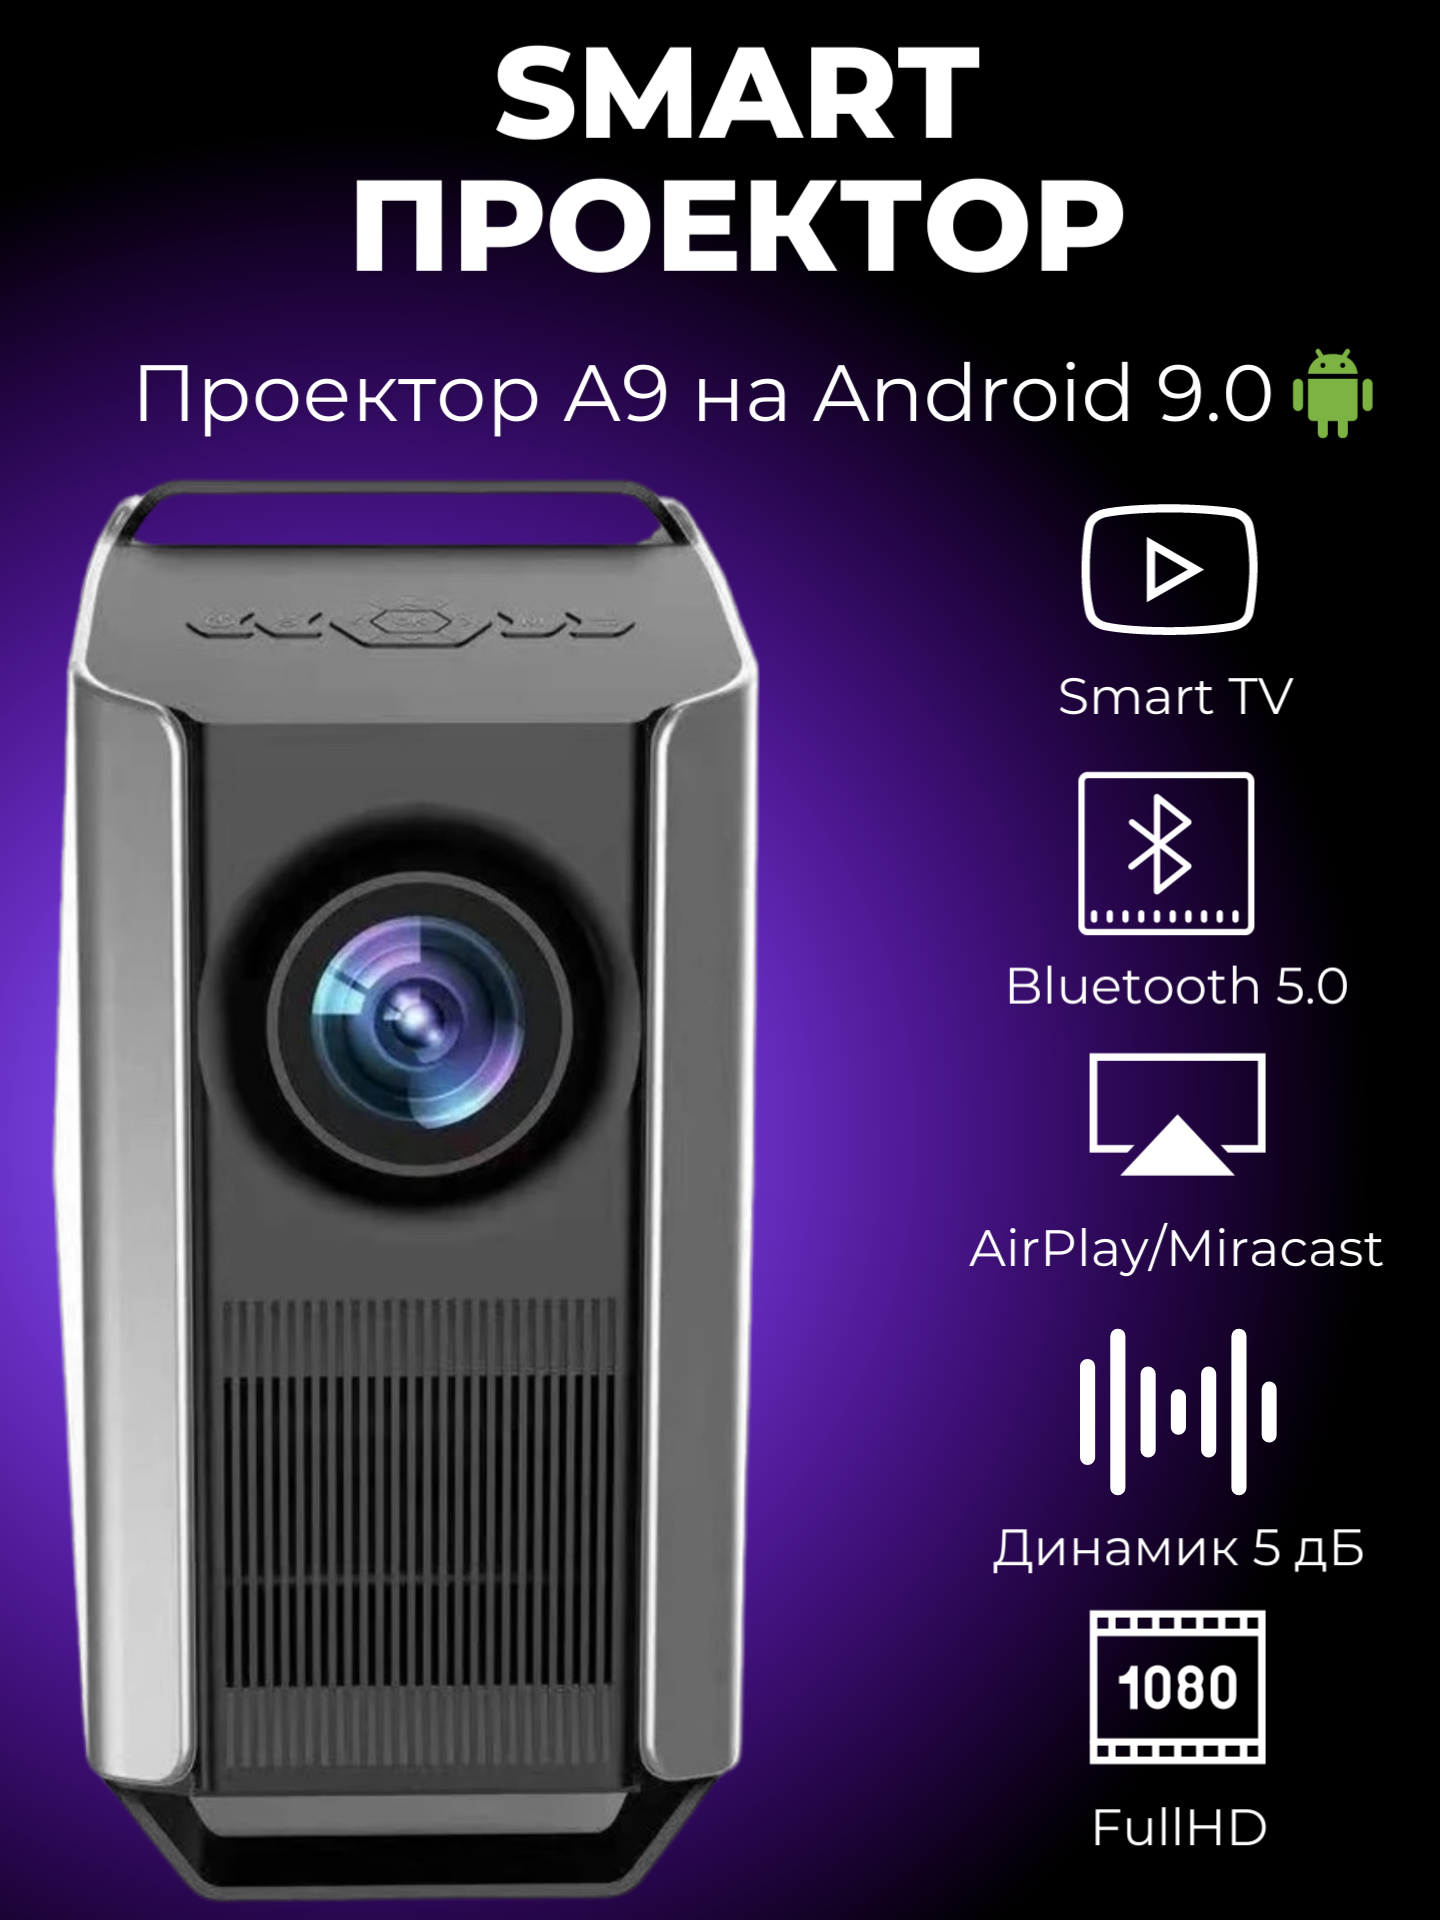 Проектор smart мультимедийный Android 9.0 WIFI Full HD 1080P/домашний кинотеатр